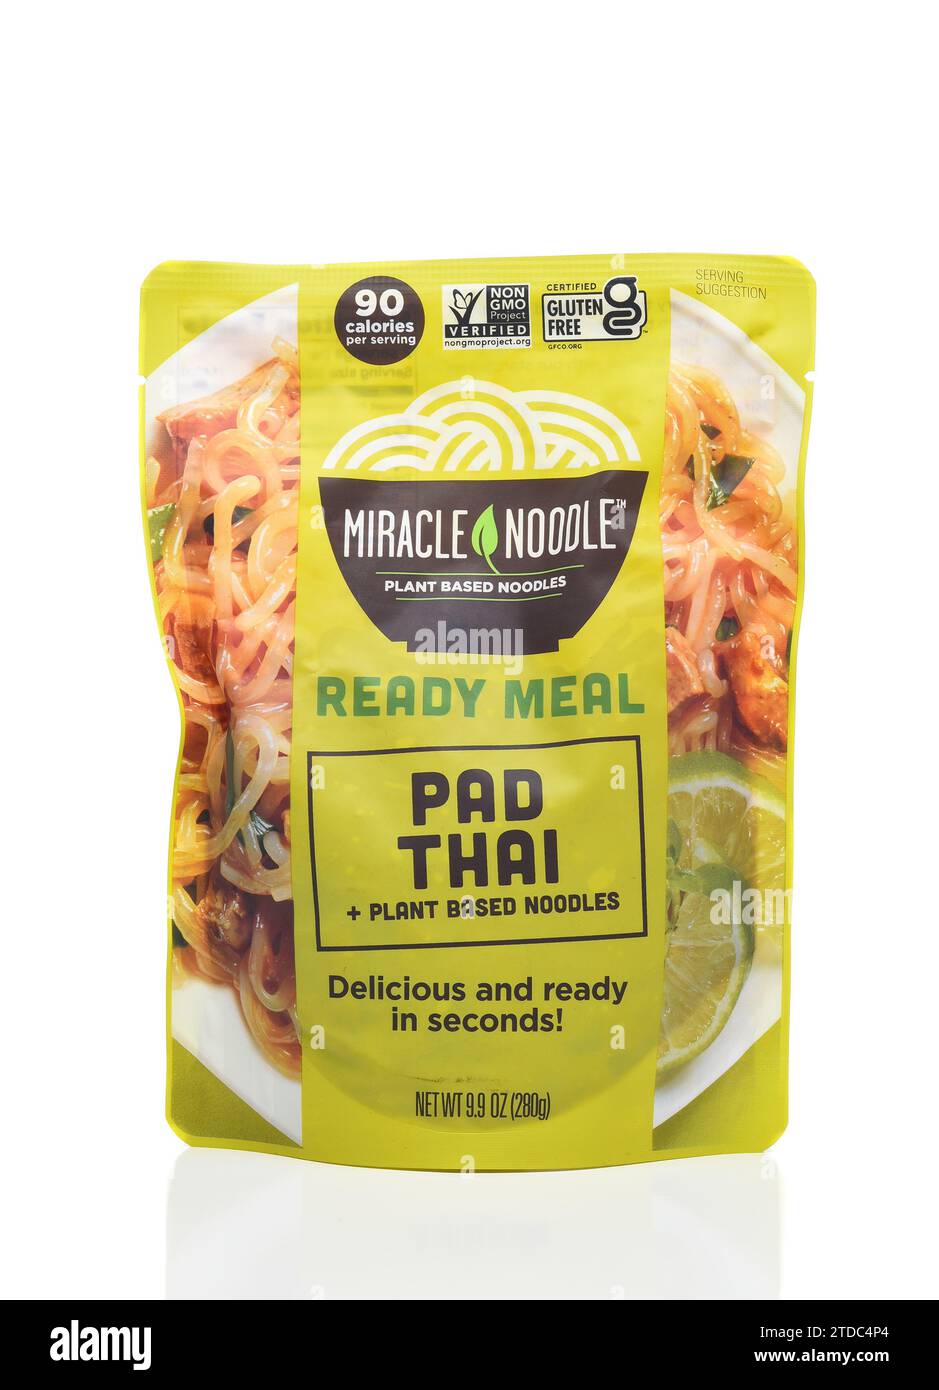 IRVINE, CALIFORNIA - 13 DEC 2023: Un pacchetto di Miracle Noodle Pad Thai, realizzato con spaghetti a base vegetale. Foto Stock